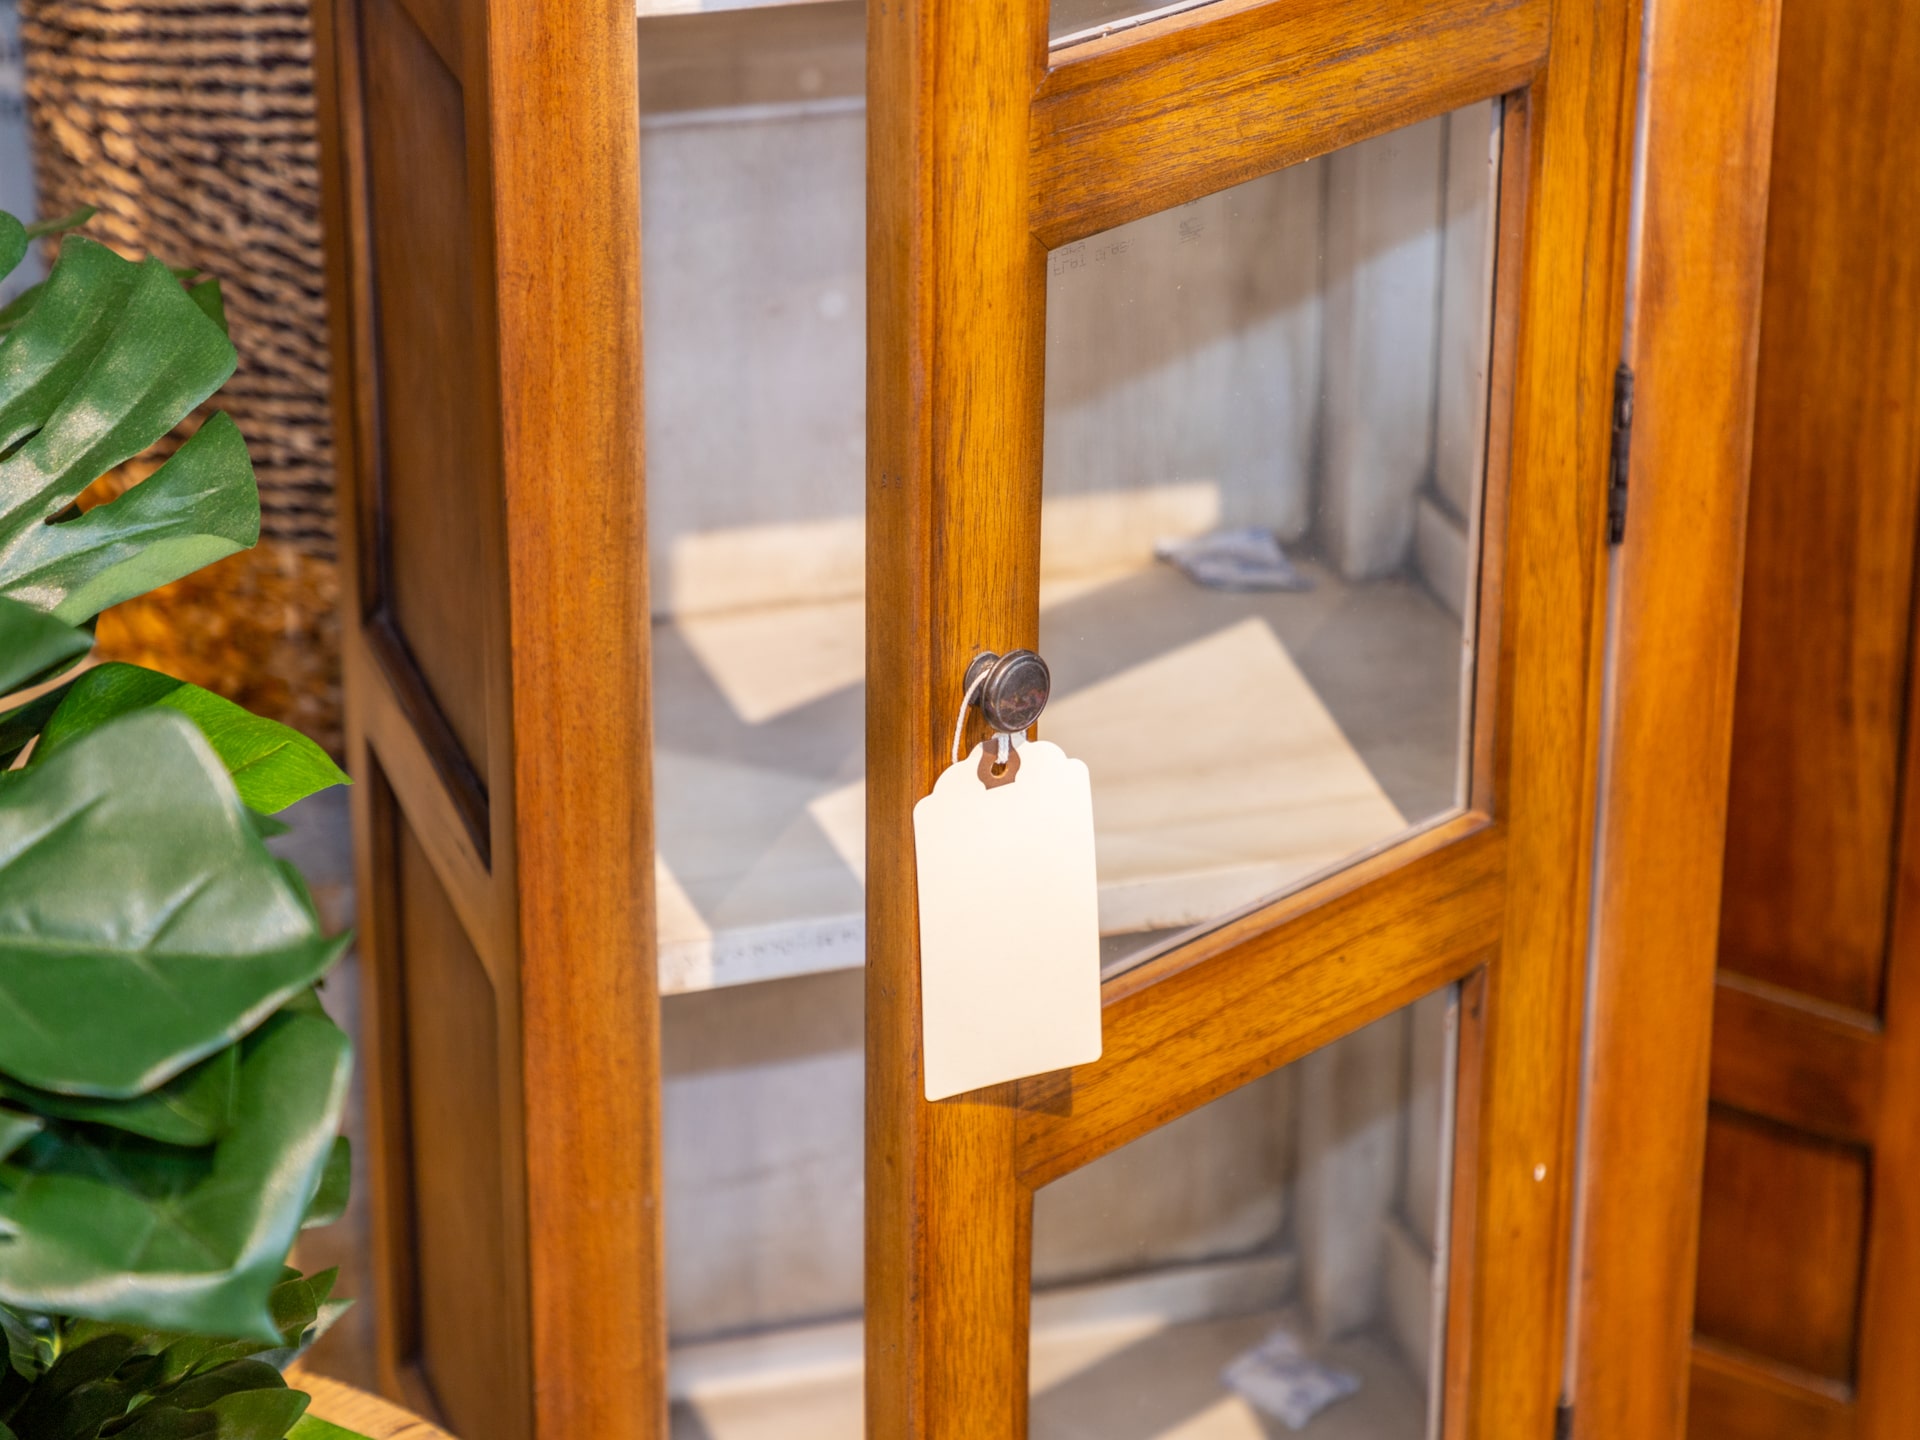 Juqui Display Cabinet With 1 Door – Honey